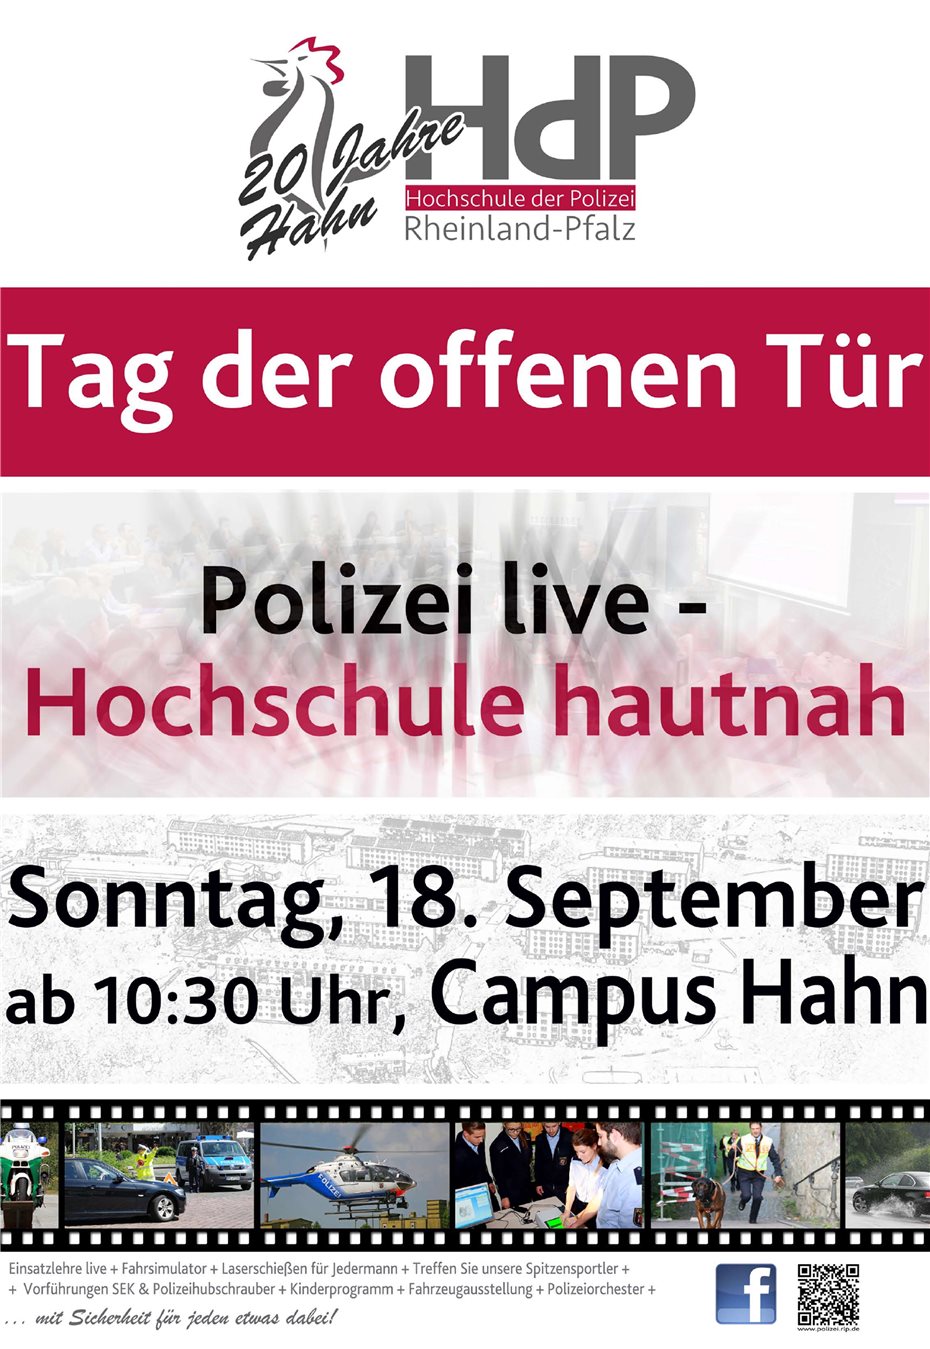 20 Jahre Hahn – „Polizei live, Hochschule hautnah!“